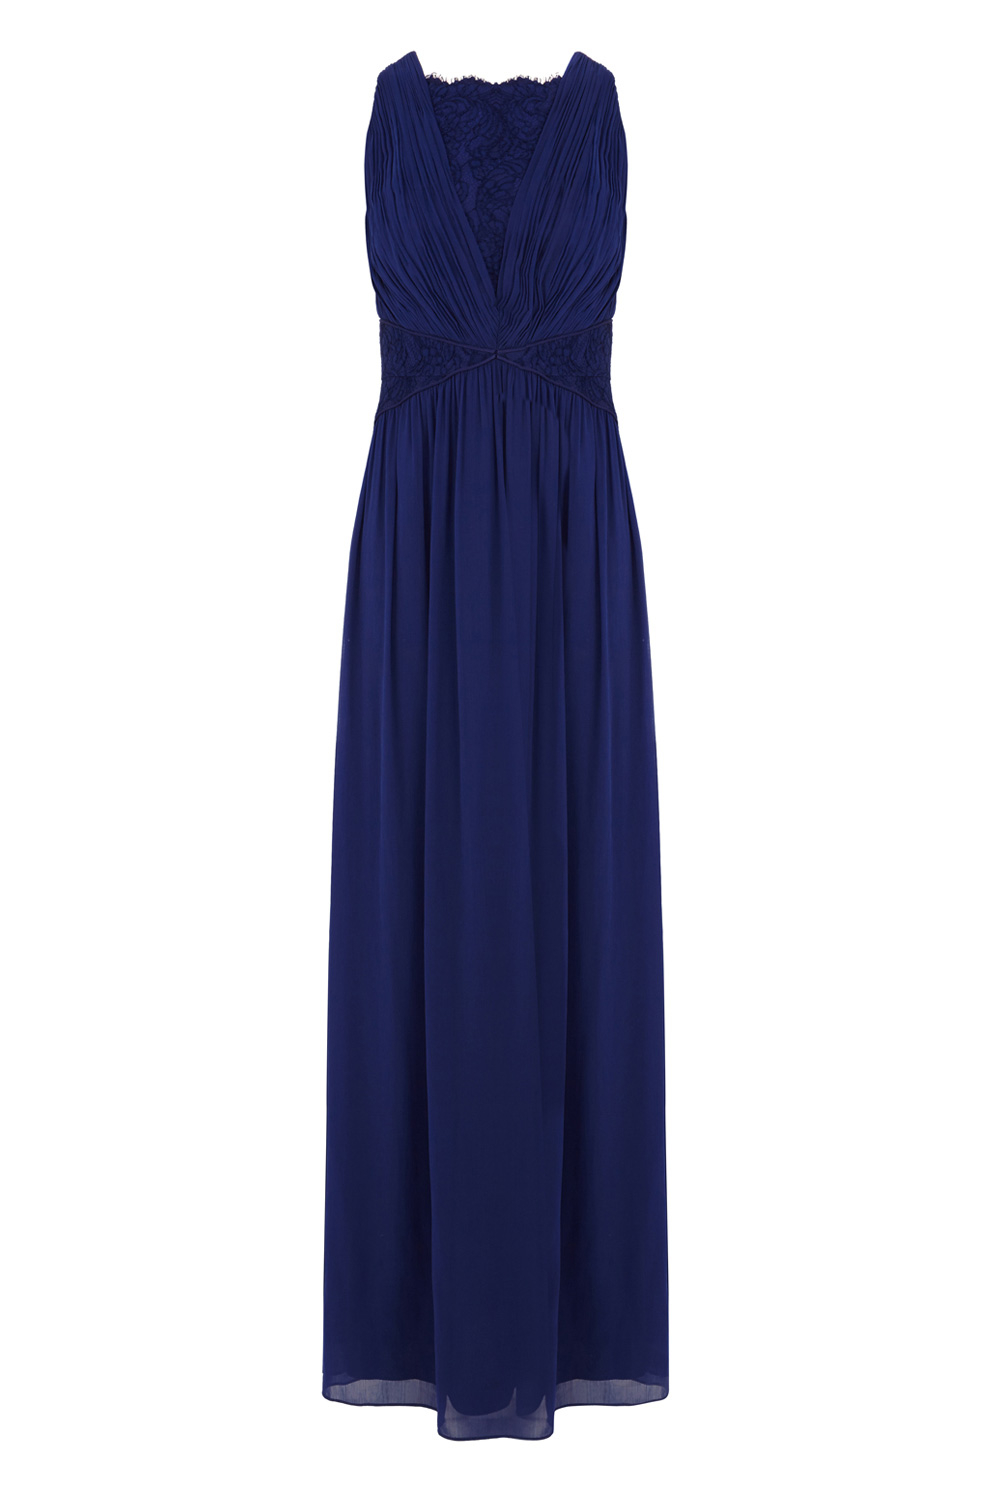 Lyst - Coast Daniella Maxi Dress in Blue